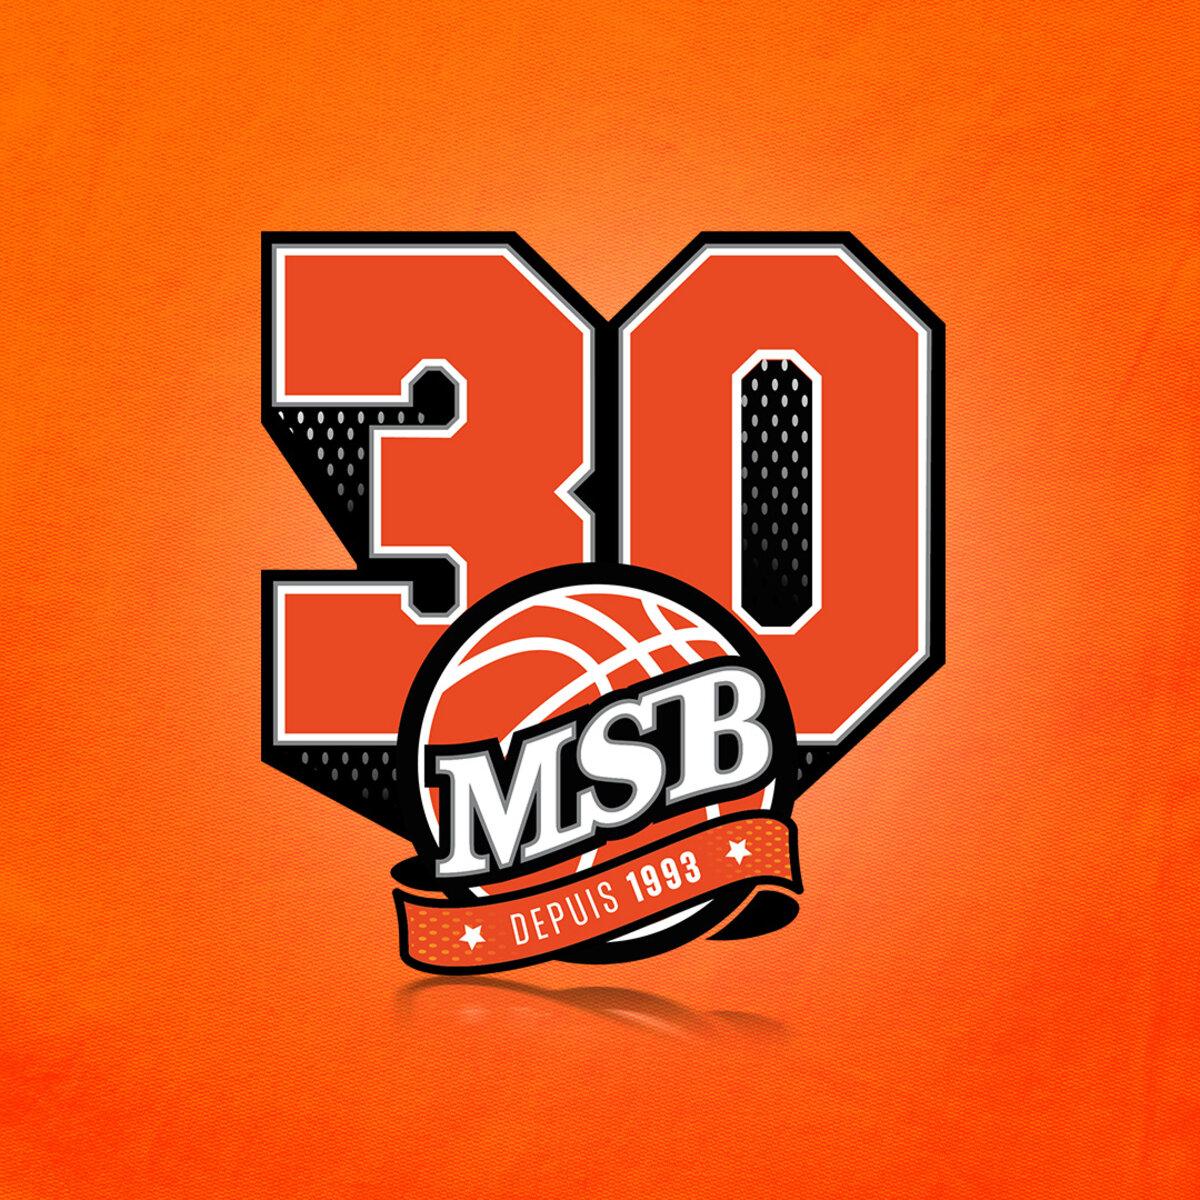 Le MSB fête ses 30 ans